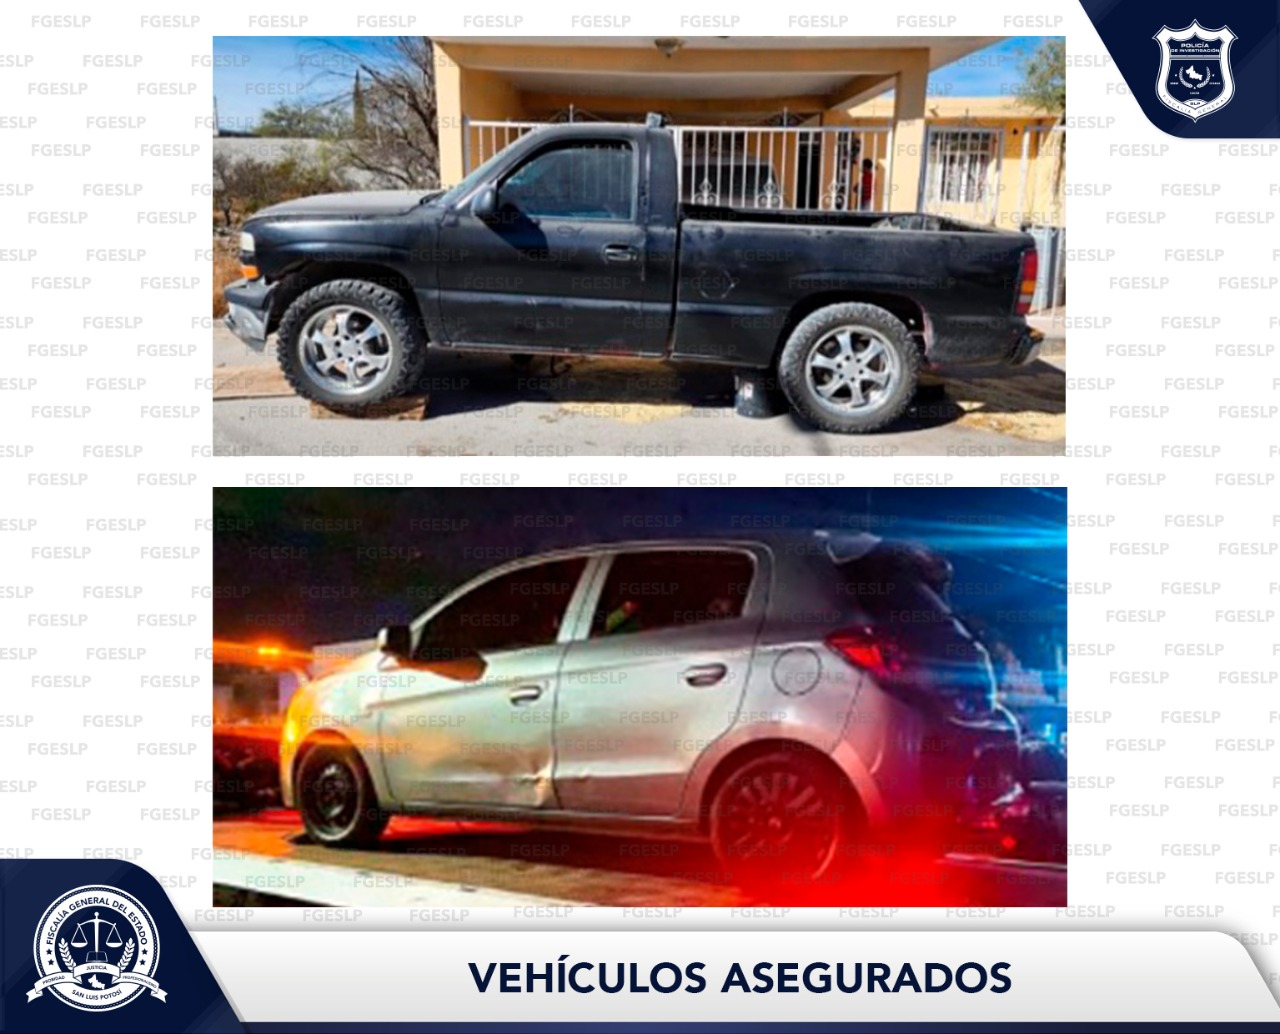 Dos automotores fueron recuperados por la Policía de Investigación (PDI) en Matehuala y Soledad de Graciano Sánchez